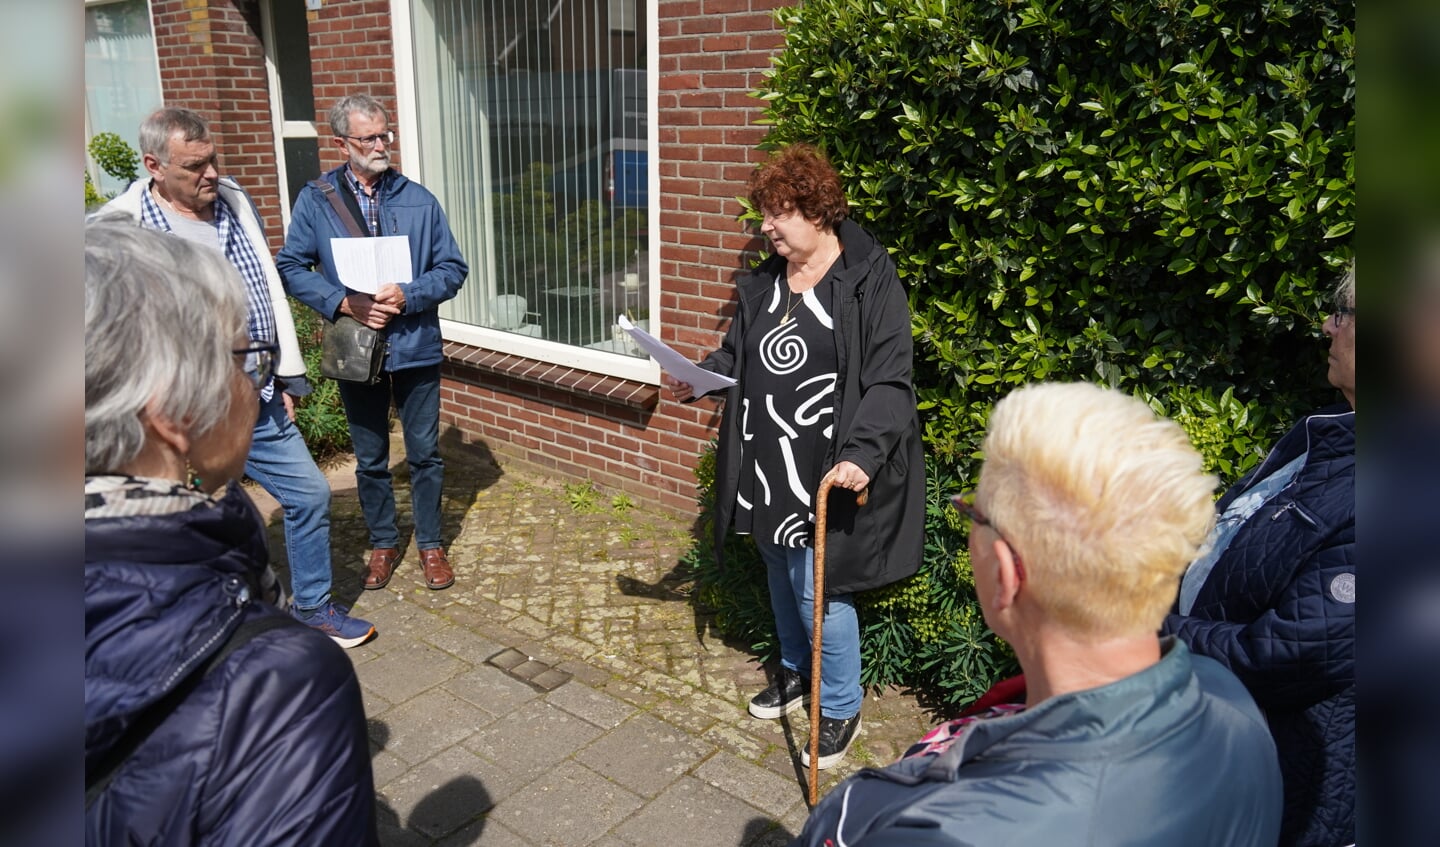 Lucie Siemes vertelt over haar familie, de Fuldauers aan de Grensstraat. Foto: Frank Vinkenvleugel

